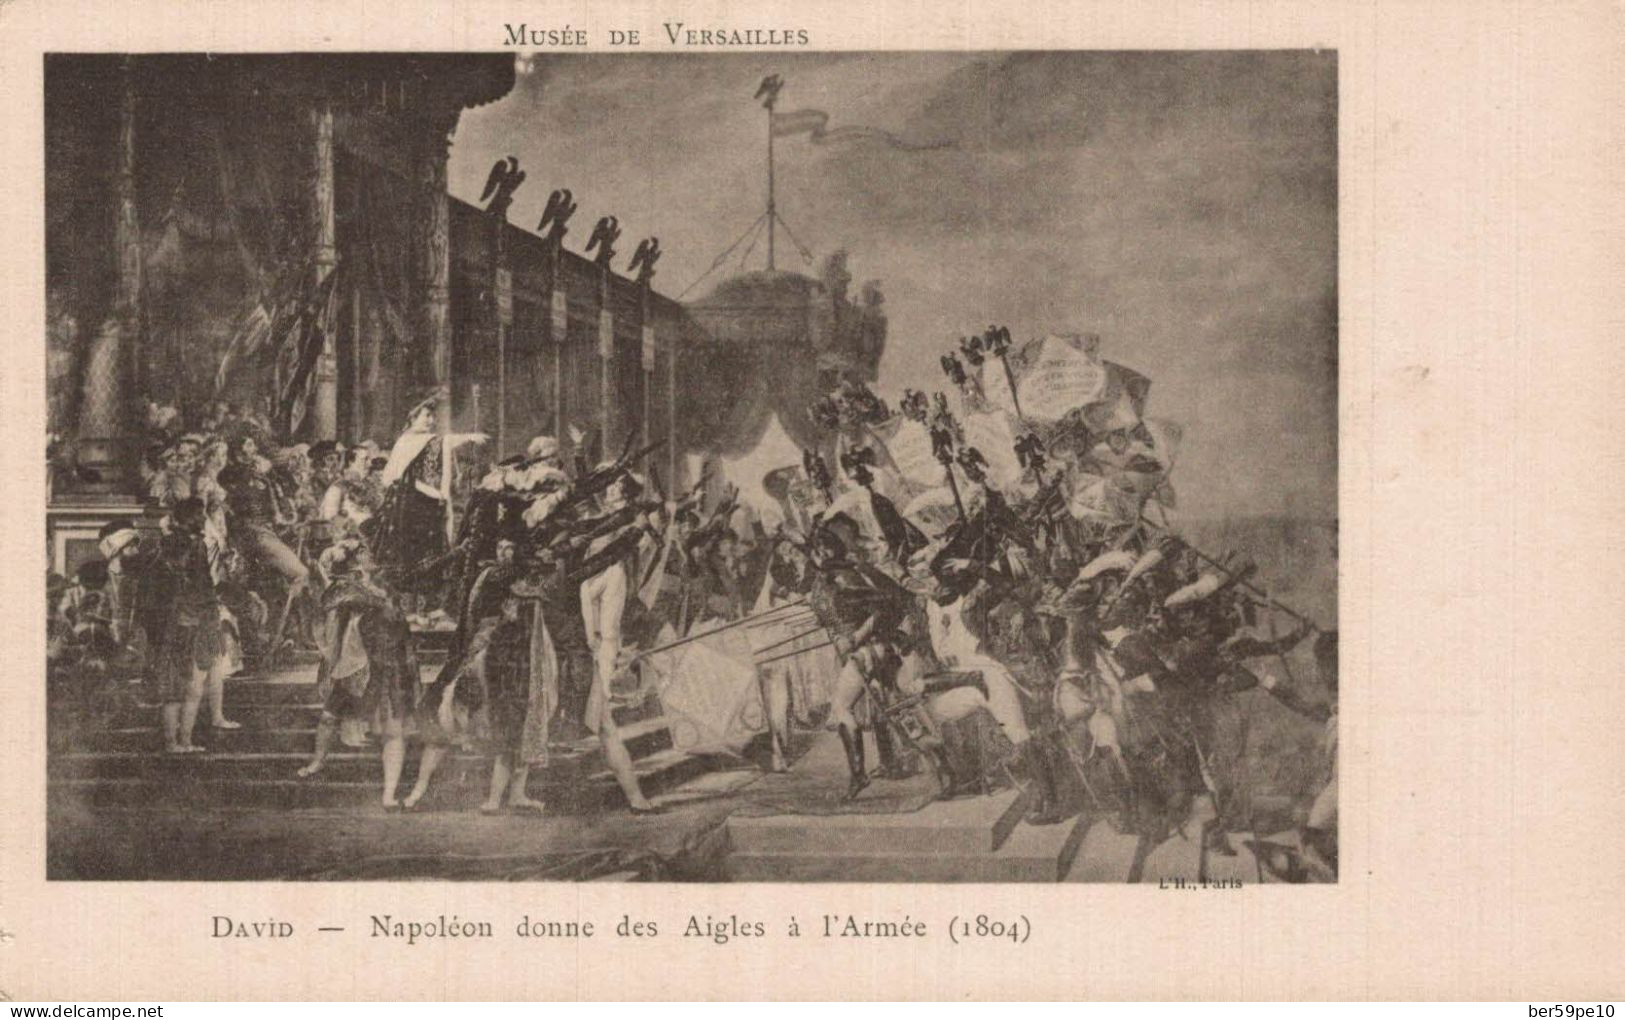 PERSONNAGES HISTORIQUES MUSEE DE VERSAILLES NAPOLEON DONNE DES AIGLES A L'ARMEE 1804 DAVID - Historical Famous People